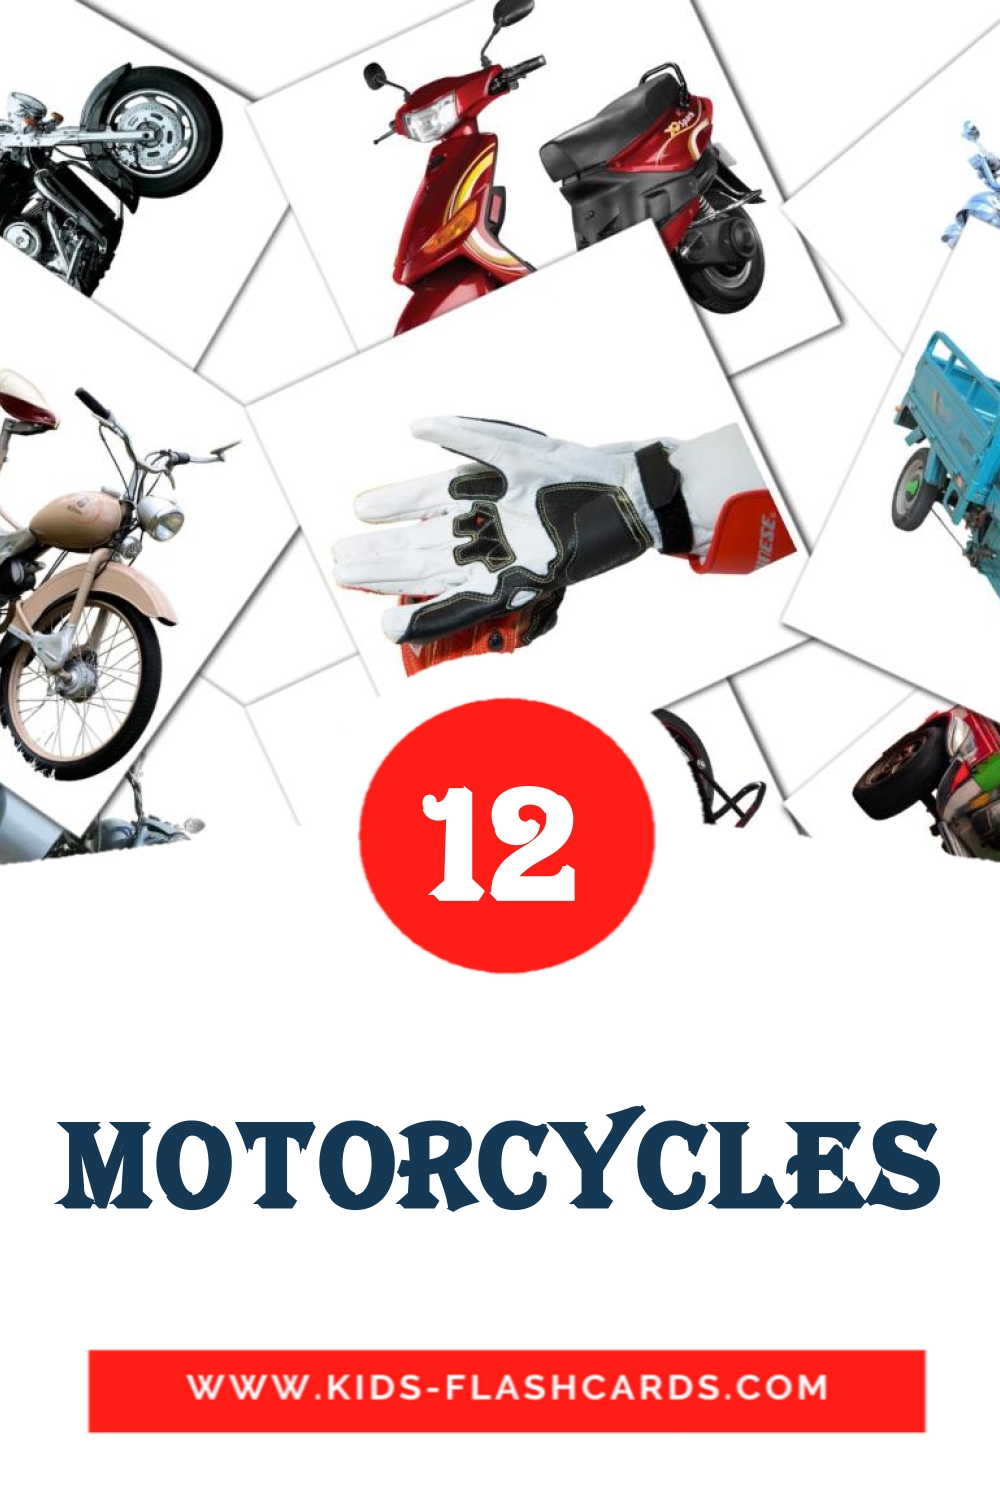 12 Motorcycles fotokaarten voor kleuters in het albanese